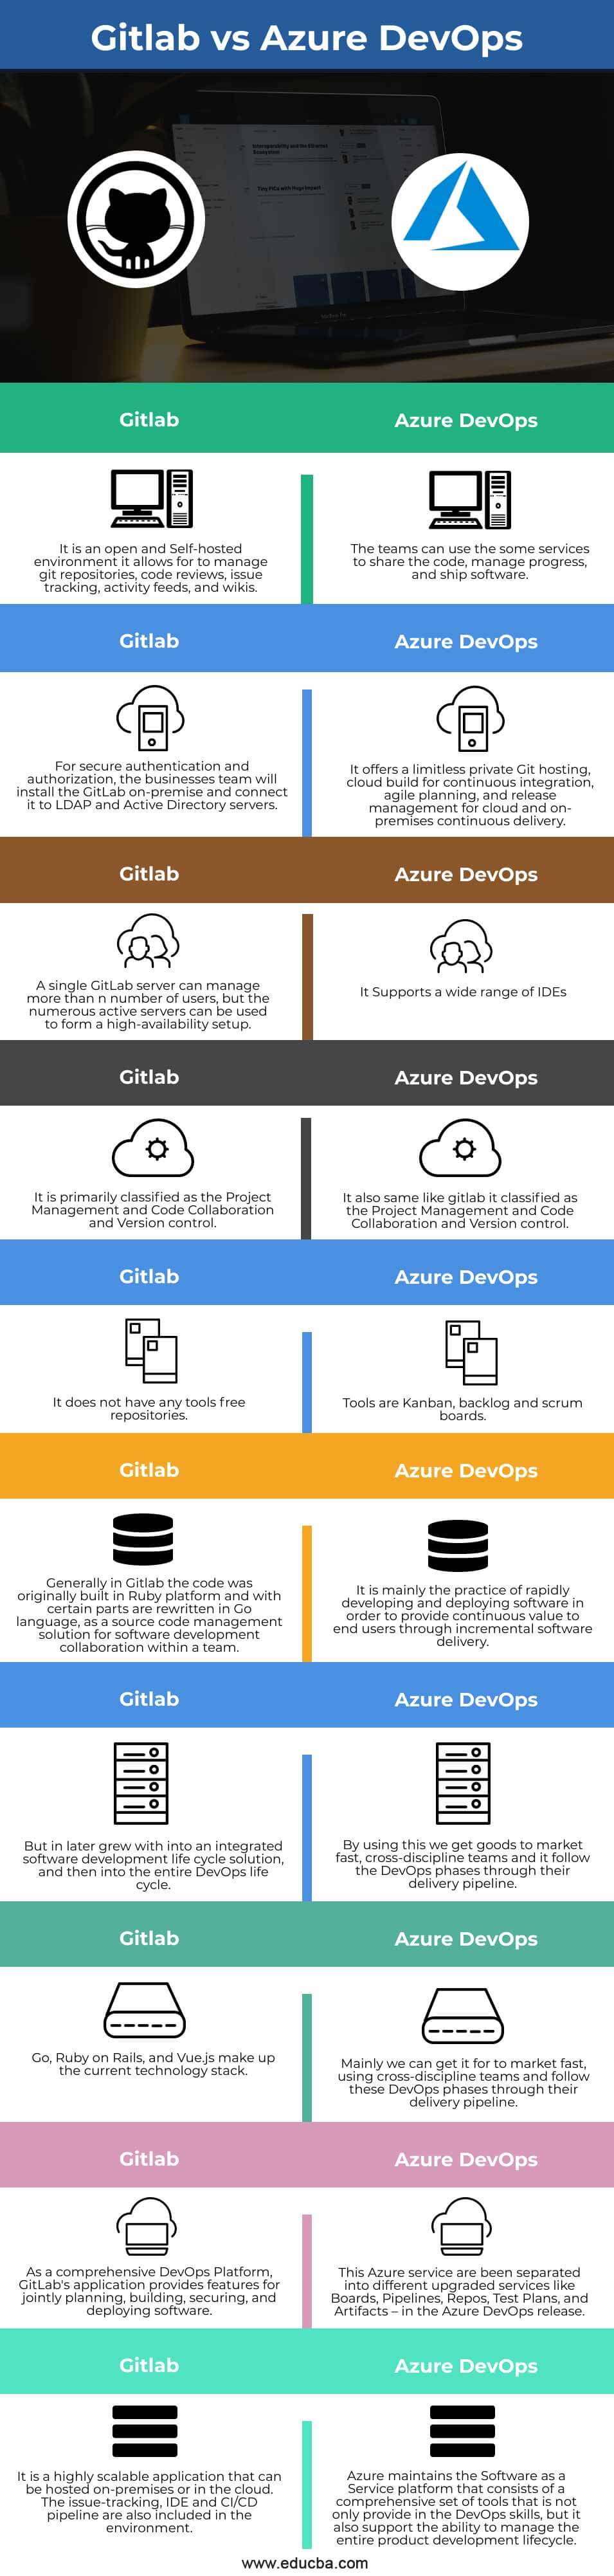 Gitlab-vs-Azure-DevOps-info